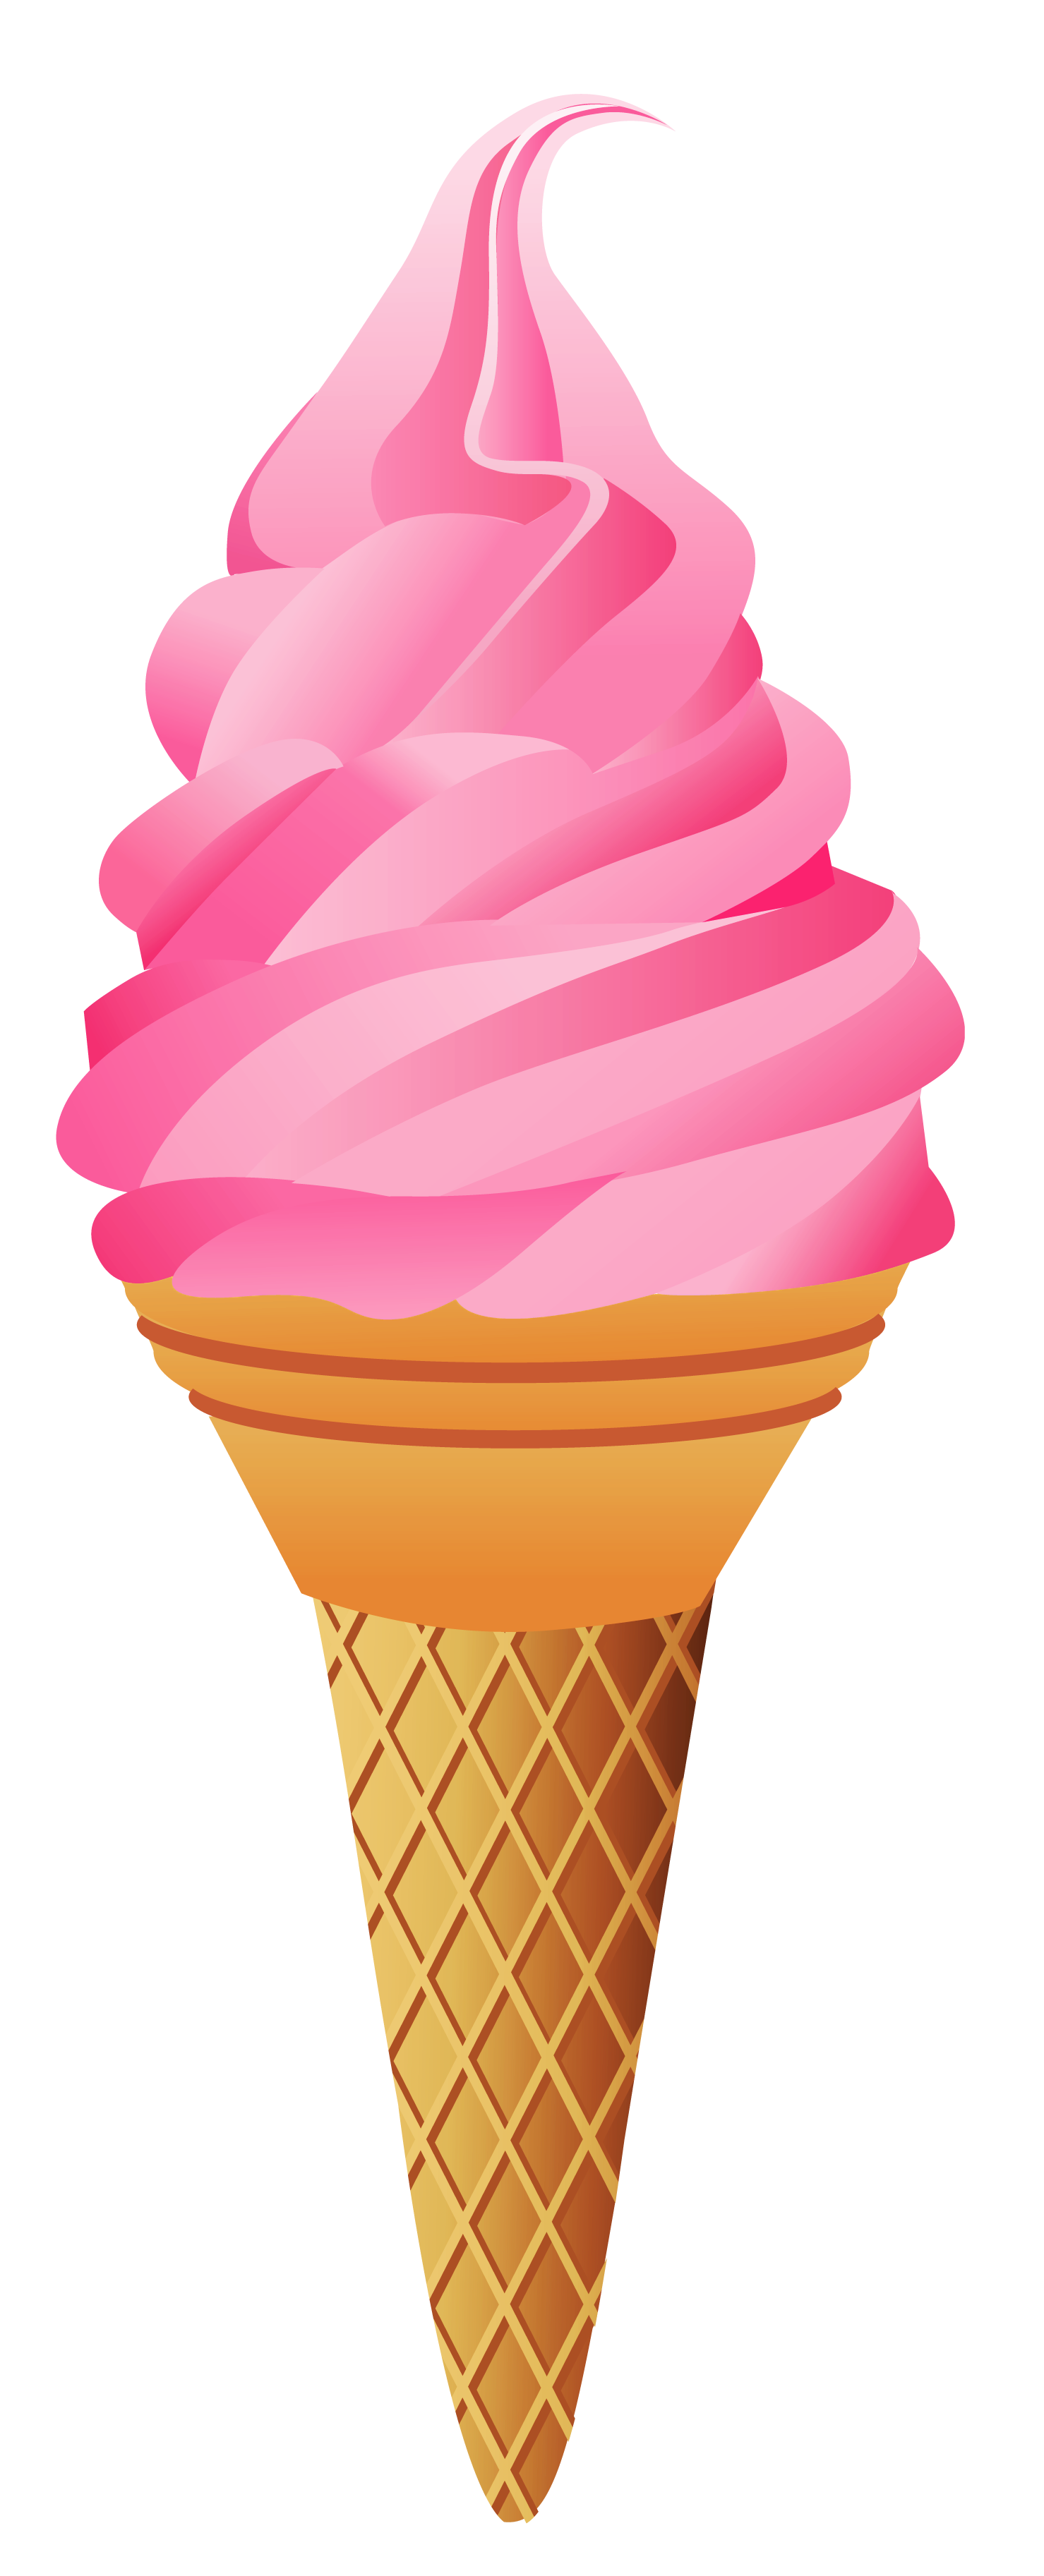 Ice cream cone ice cream no cone clipart